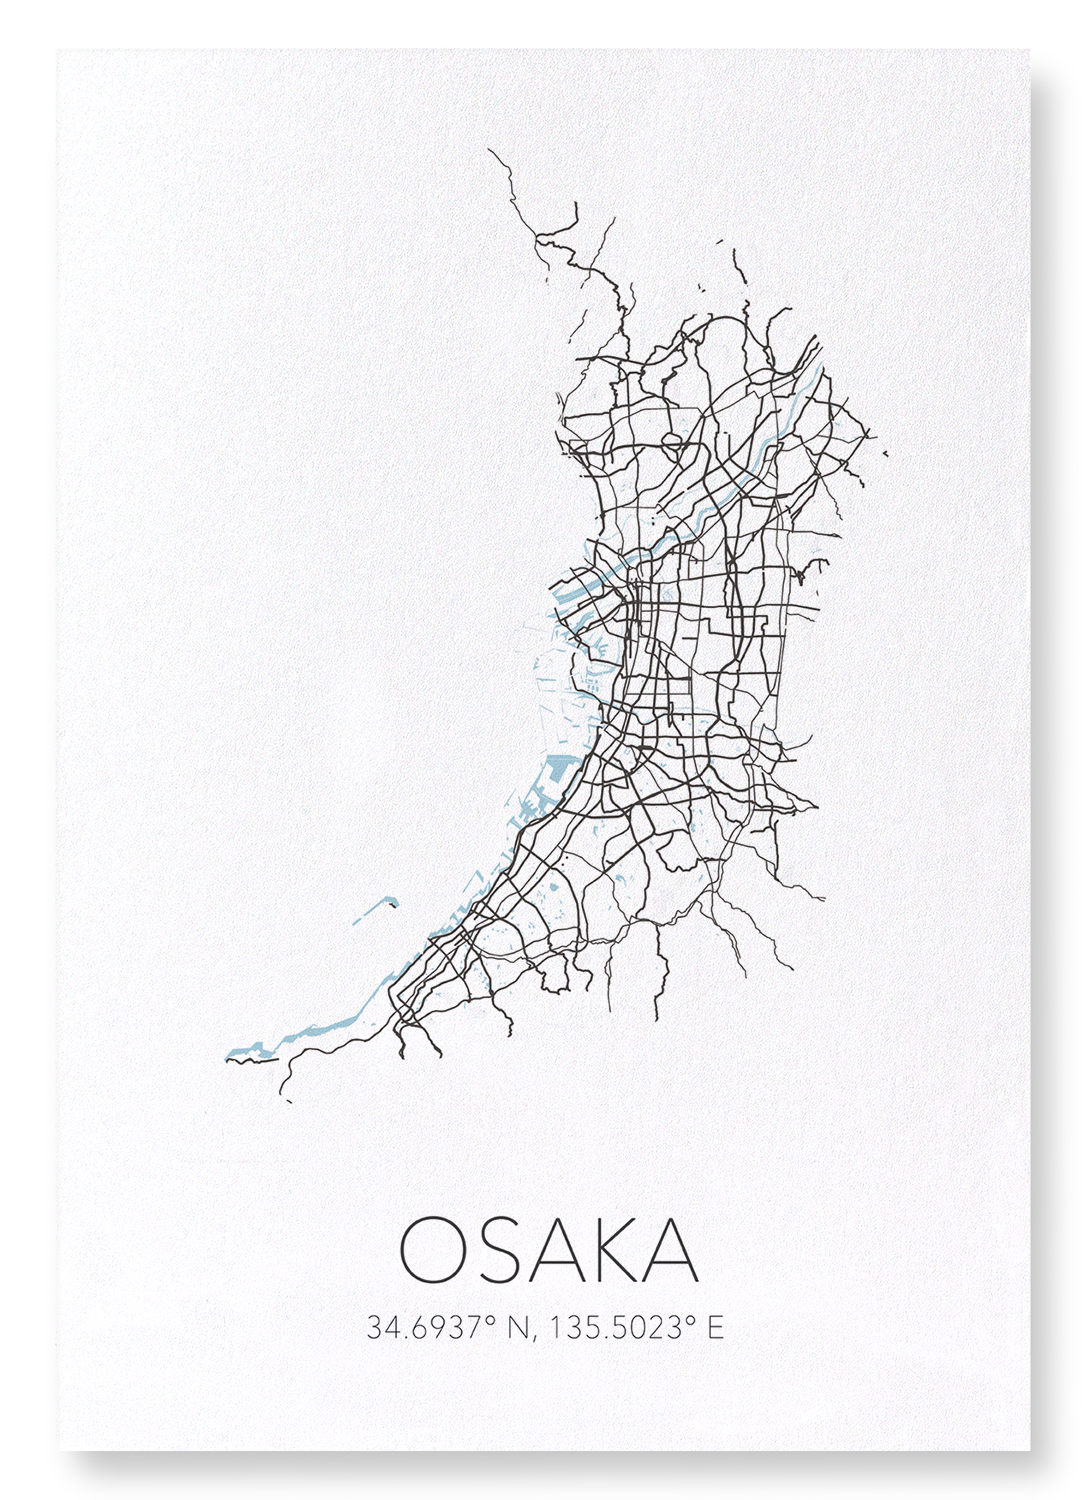 OSAKA CUTOUT: Map Cutout Art Print